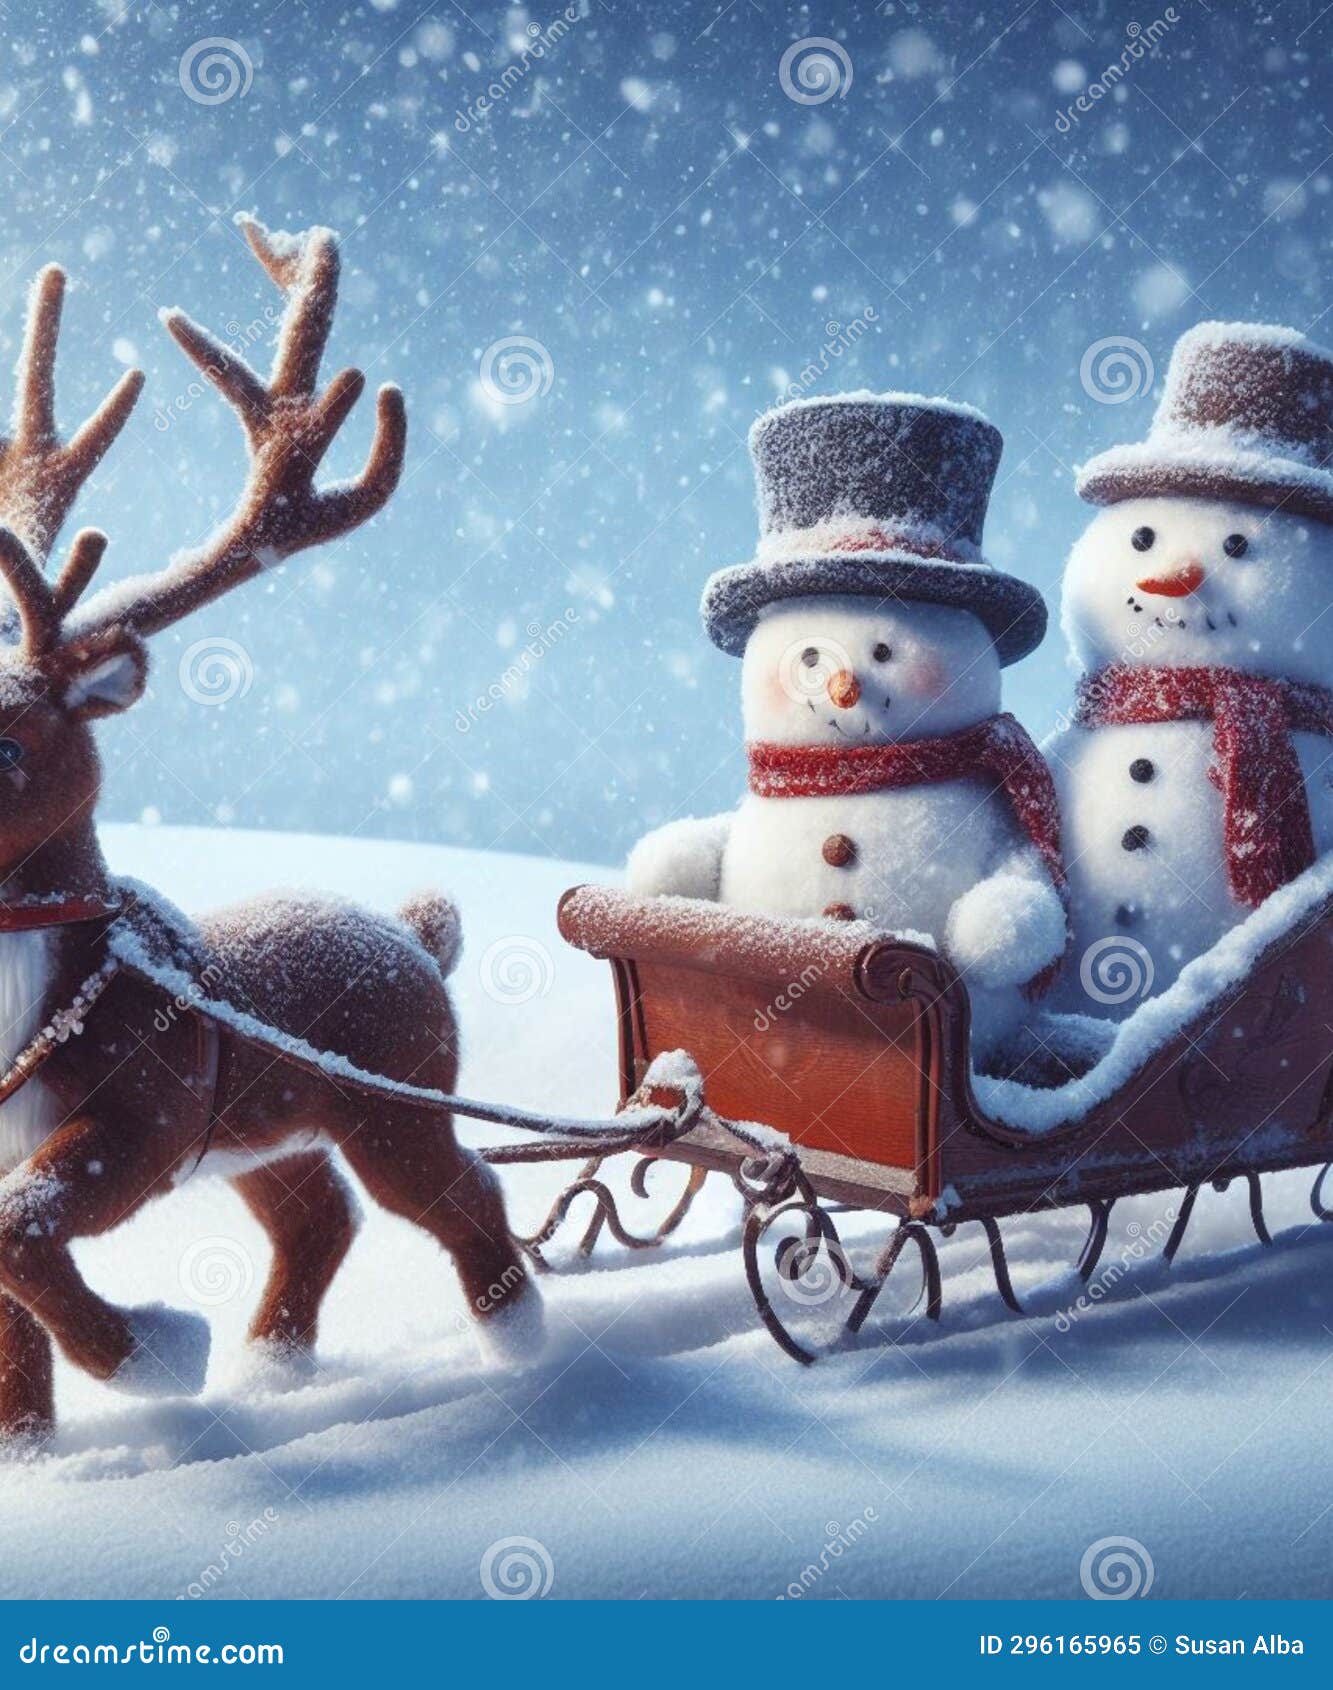 snowman drives a sleigh